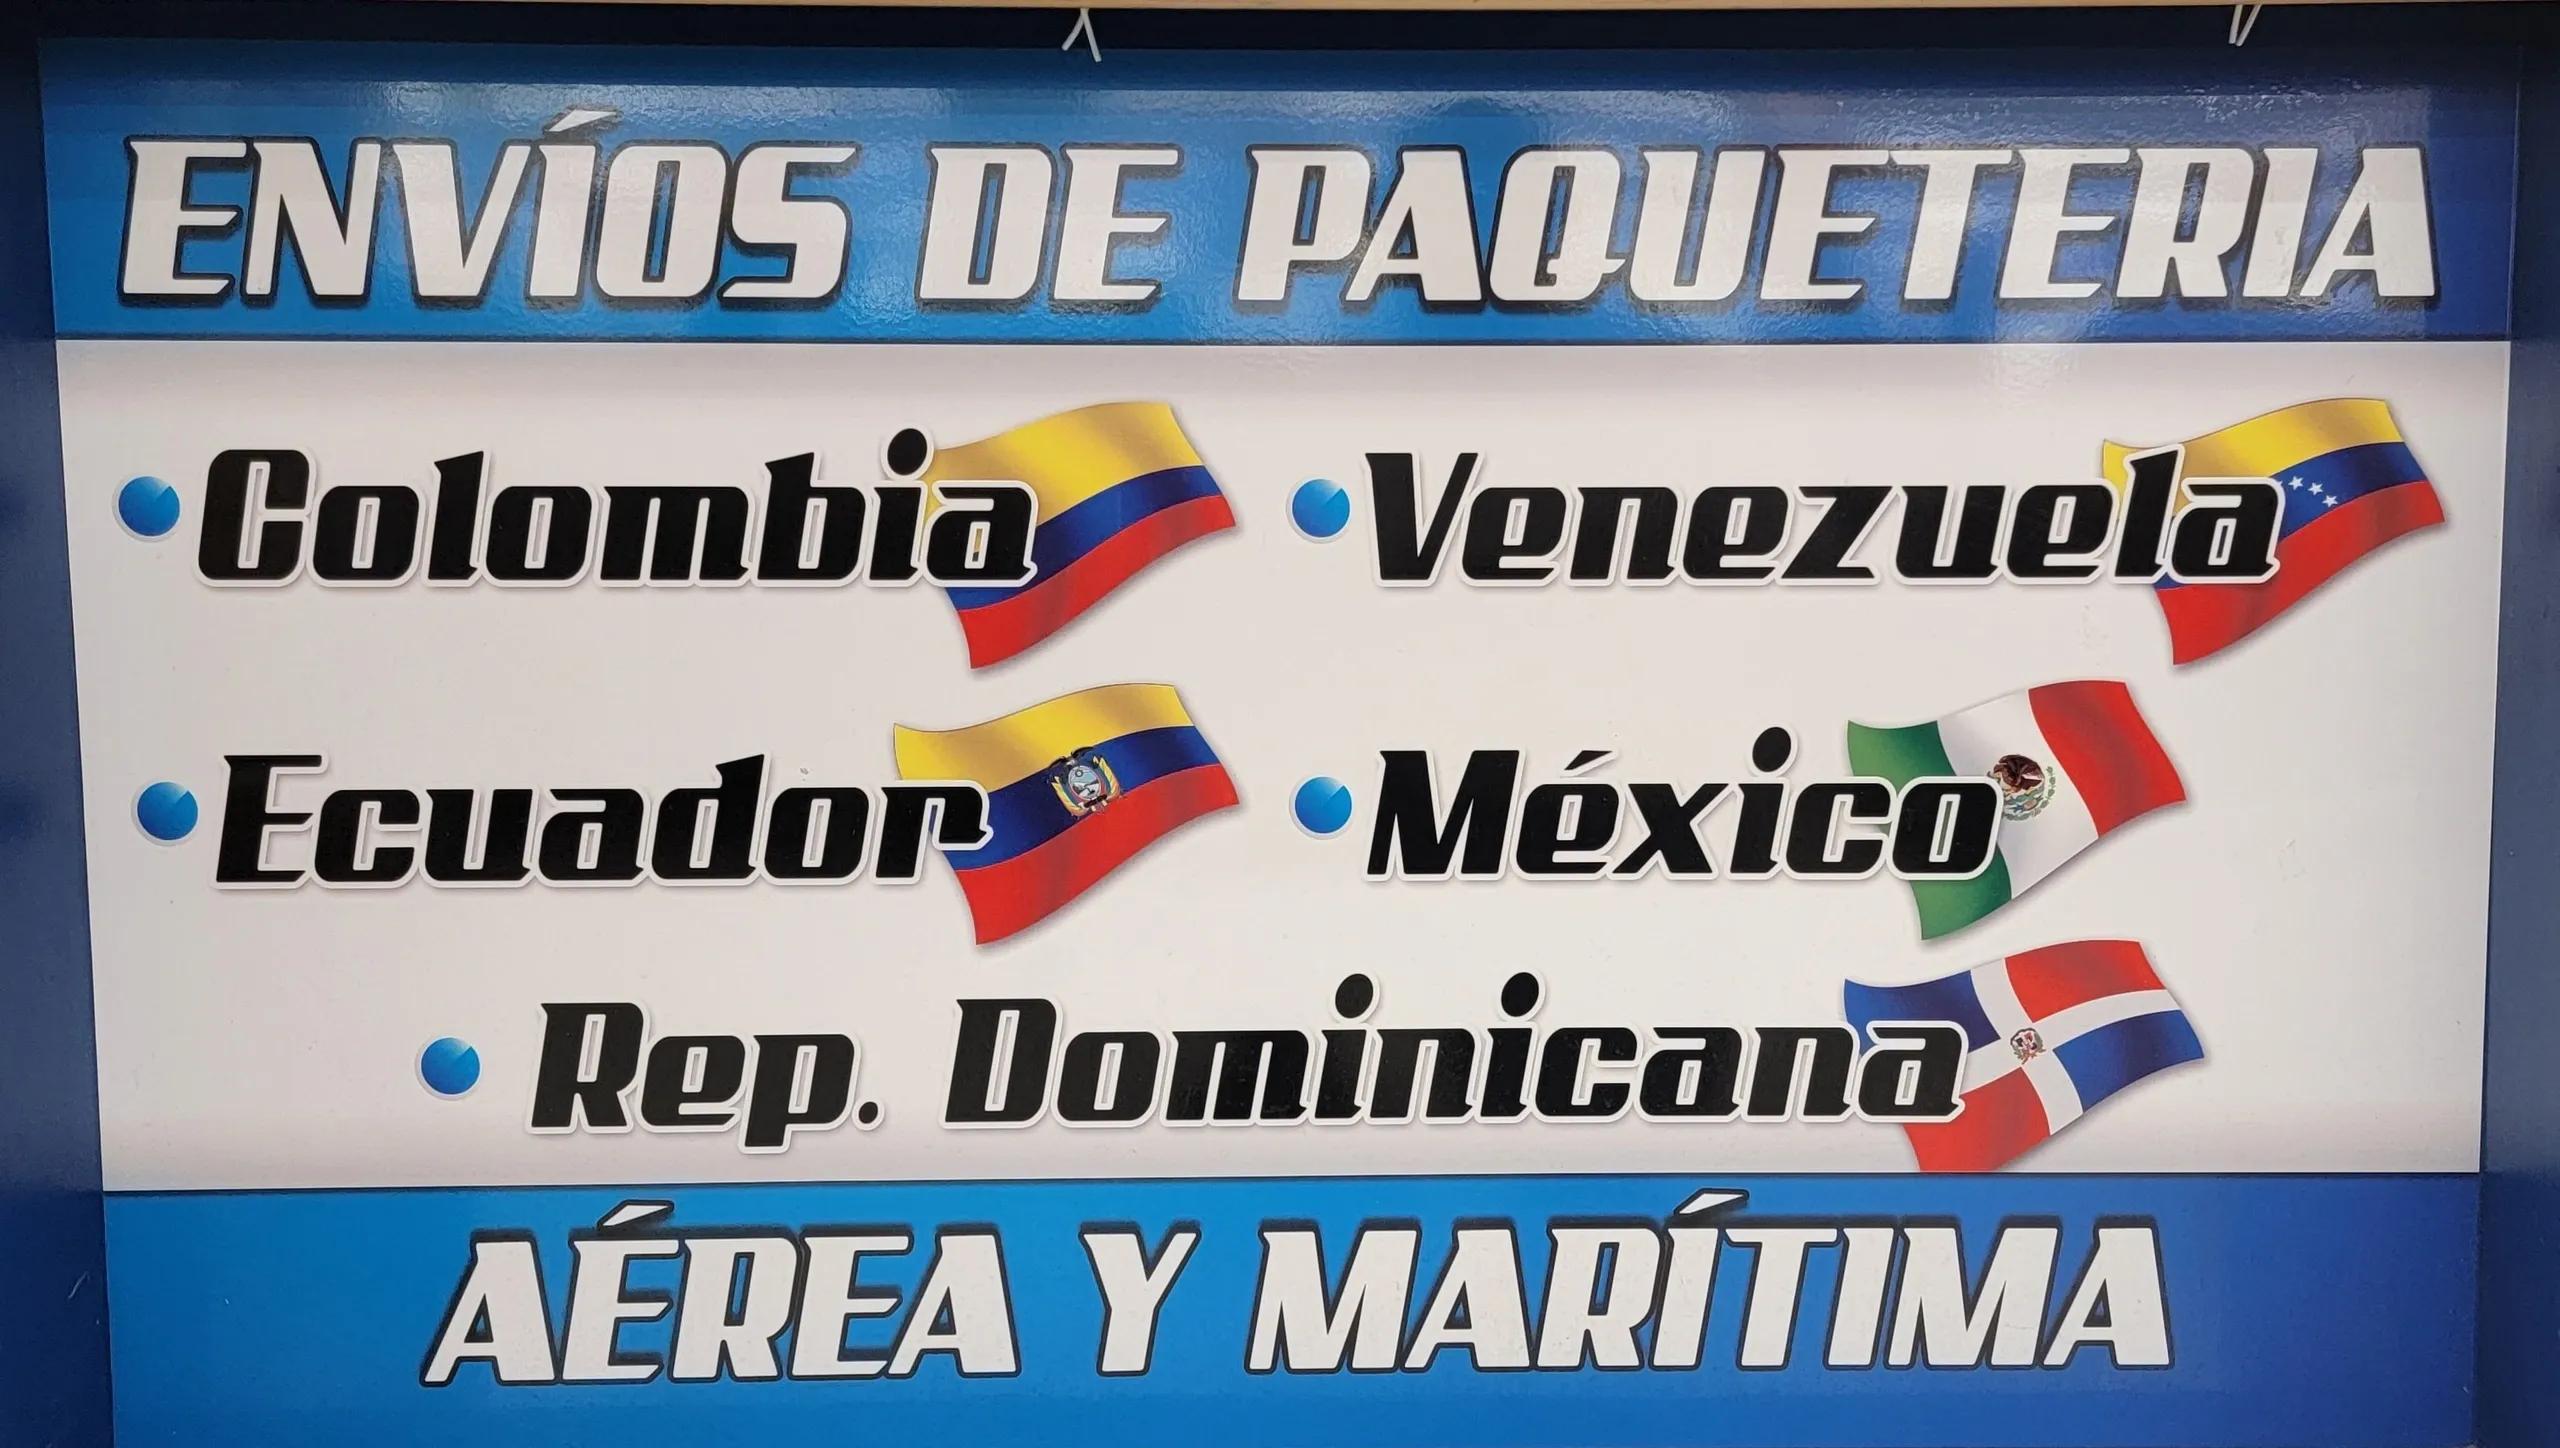 envios y mudanza a ecuador venezuela - Qué empresa hace envíos de Venezuela a Ecuador